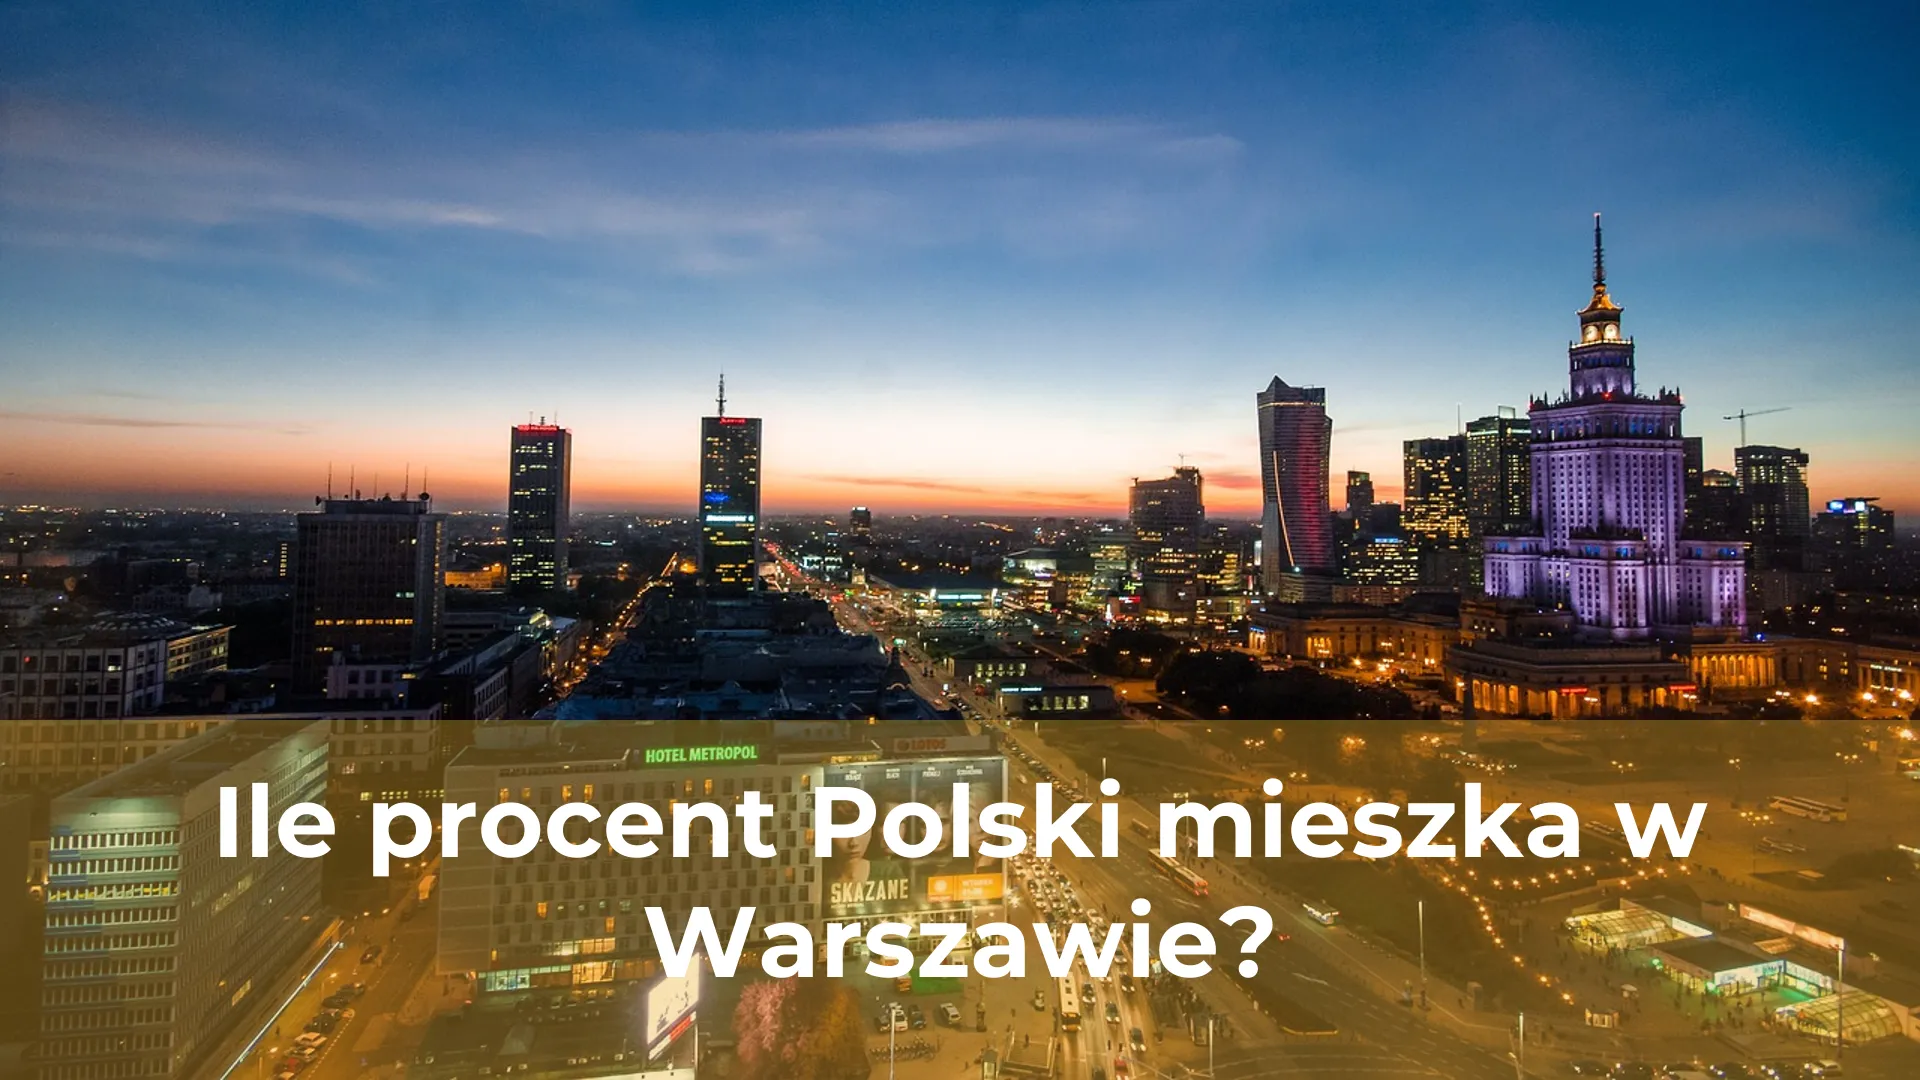 Ile procent polski mieszka w warszawie